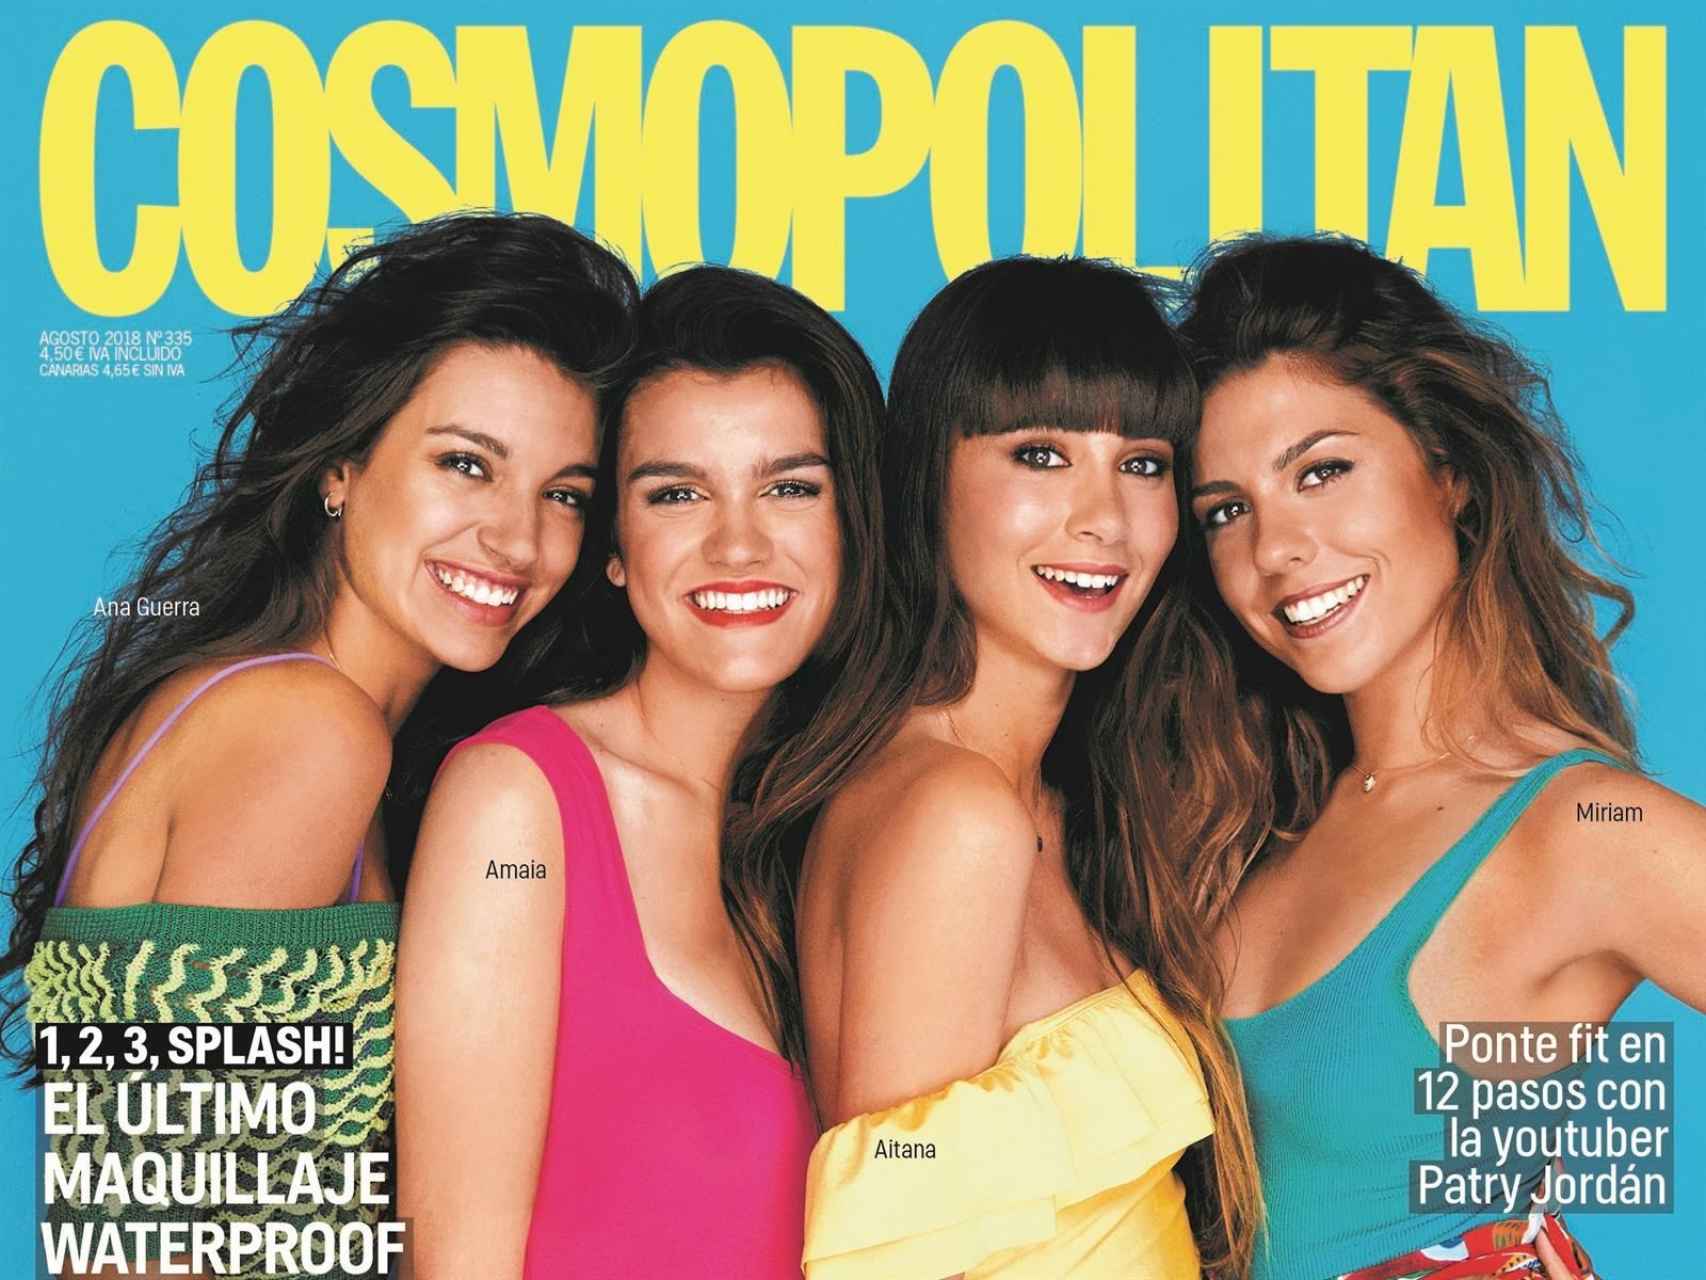 Ana Guerra, Amaia, Aitana y Miriam protagonizan la portada de la revista 'Cosmopolitan'.